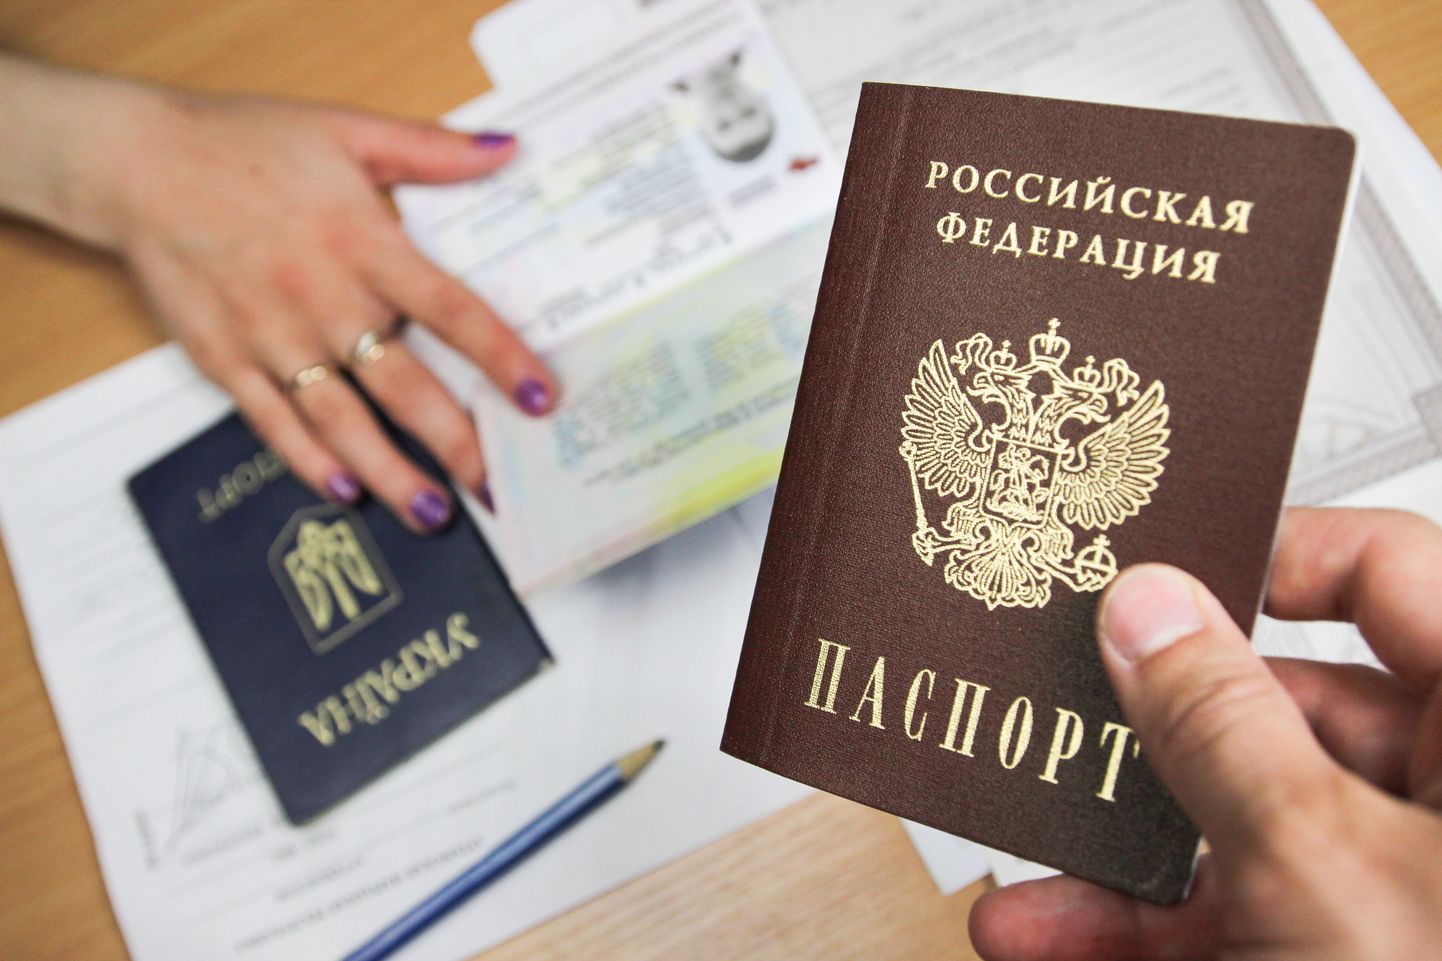 Luganskis väljastatud Vene Föderatsiooni pass.